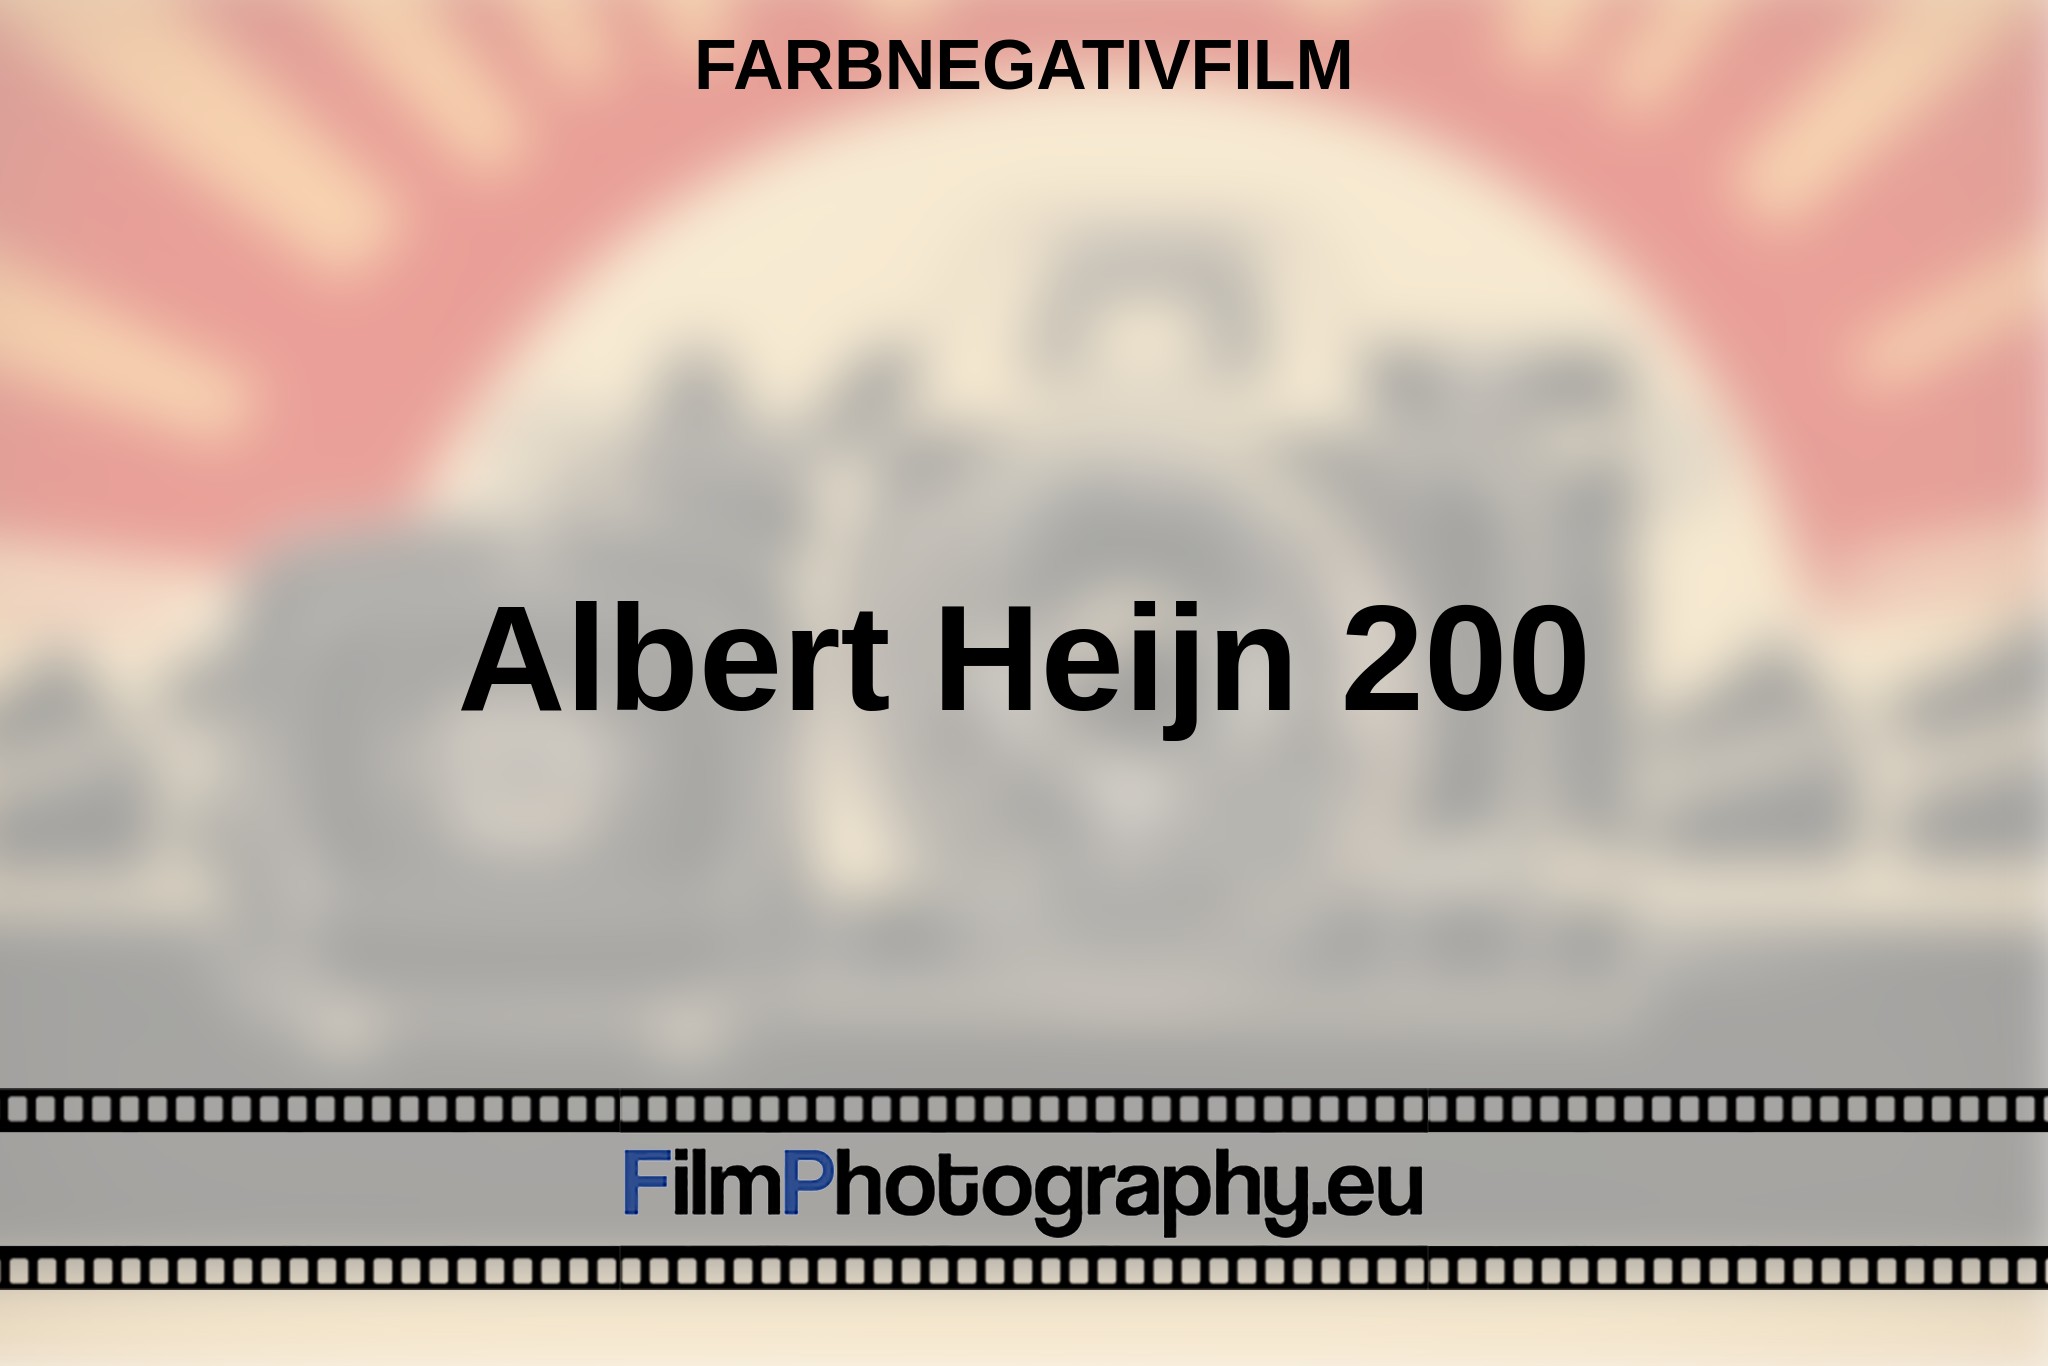 albert-heijn-200-farbnegativfilm-bnv.jpg